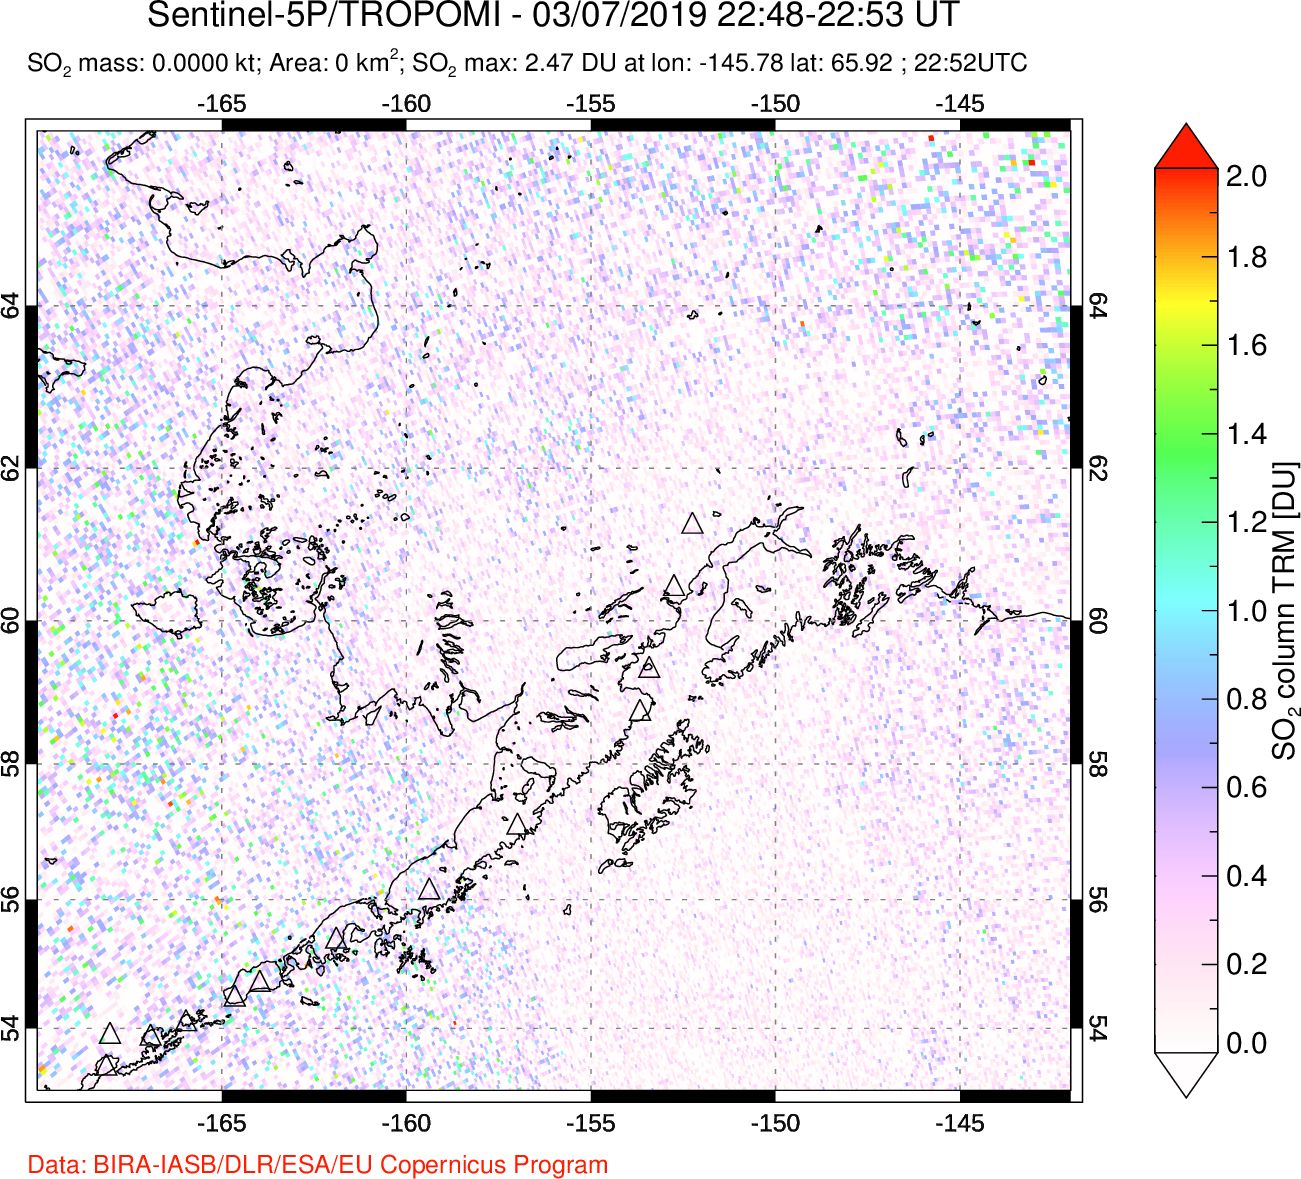 A sulfur dioxide image over Alaska, USA on Mar 07, 2019.